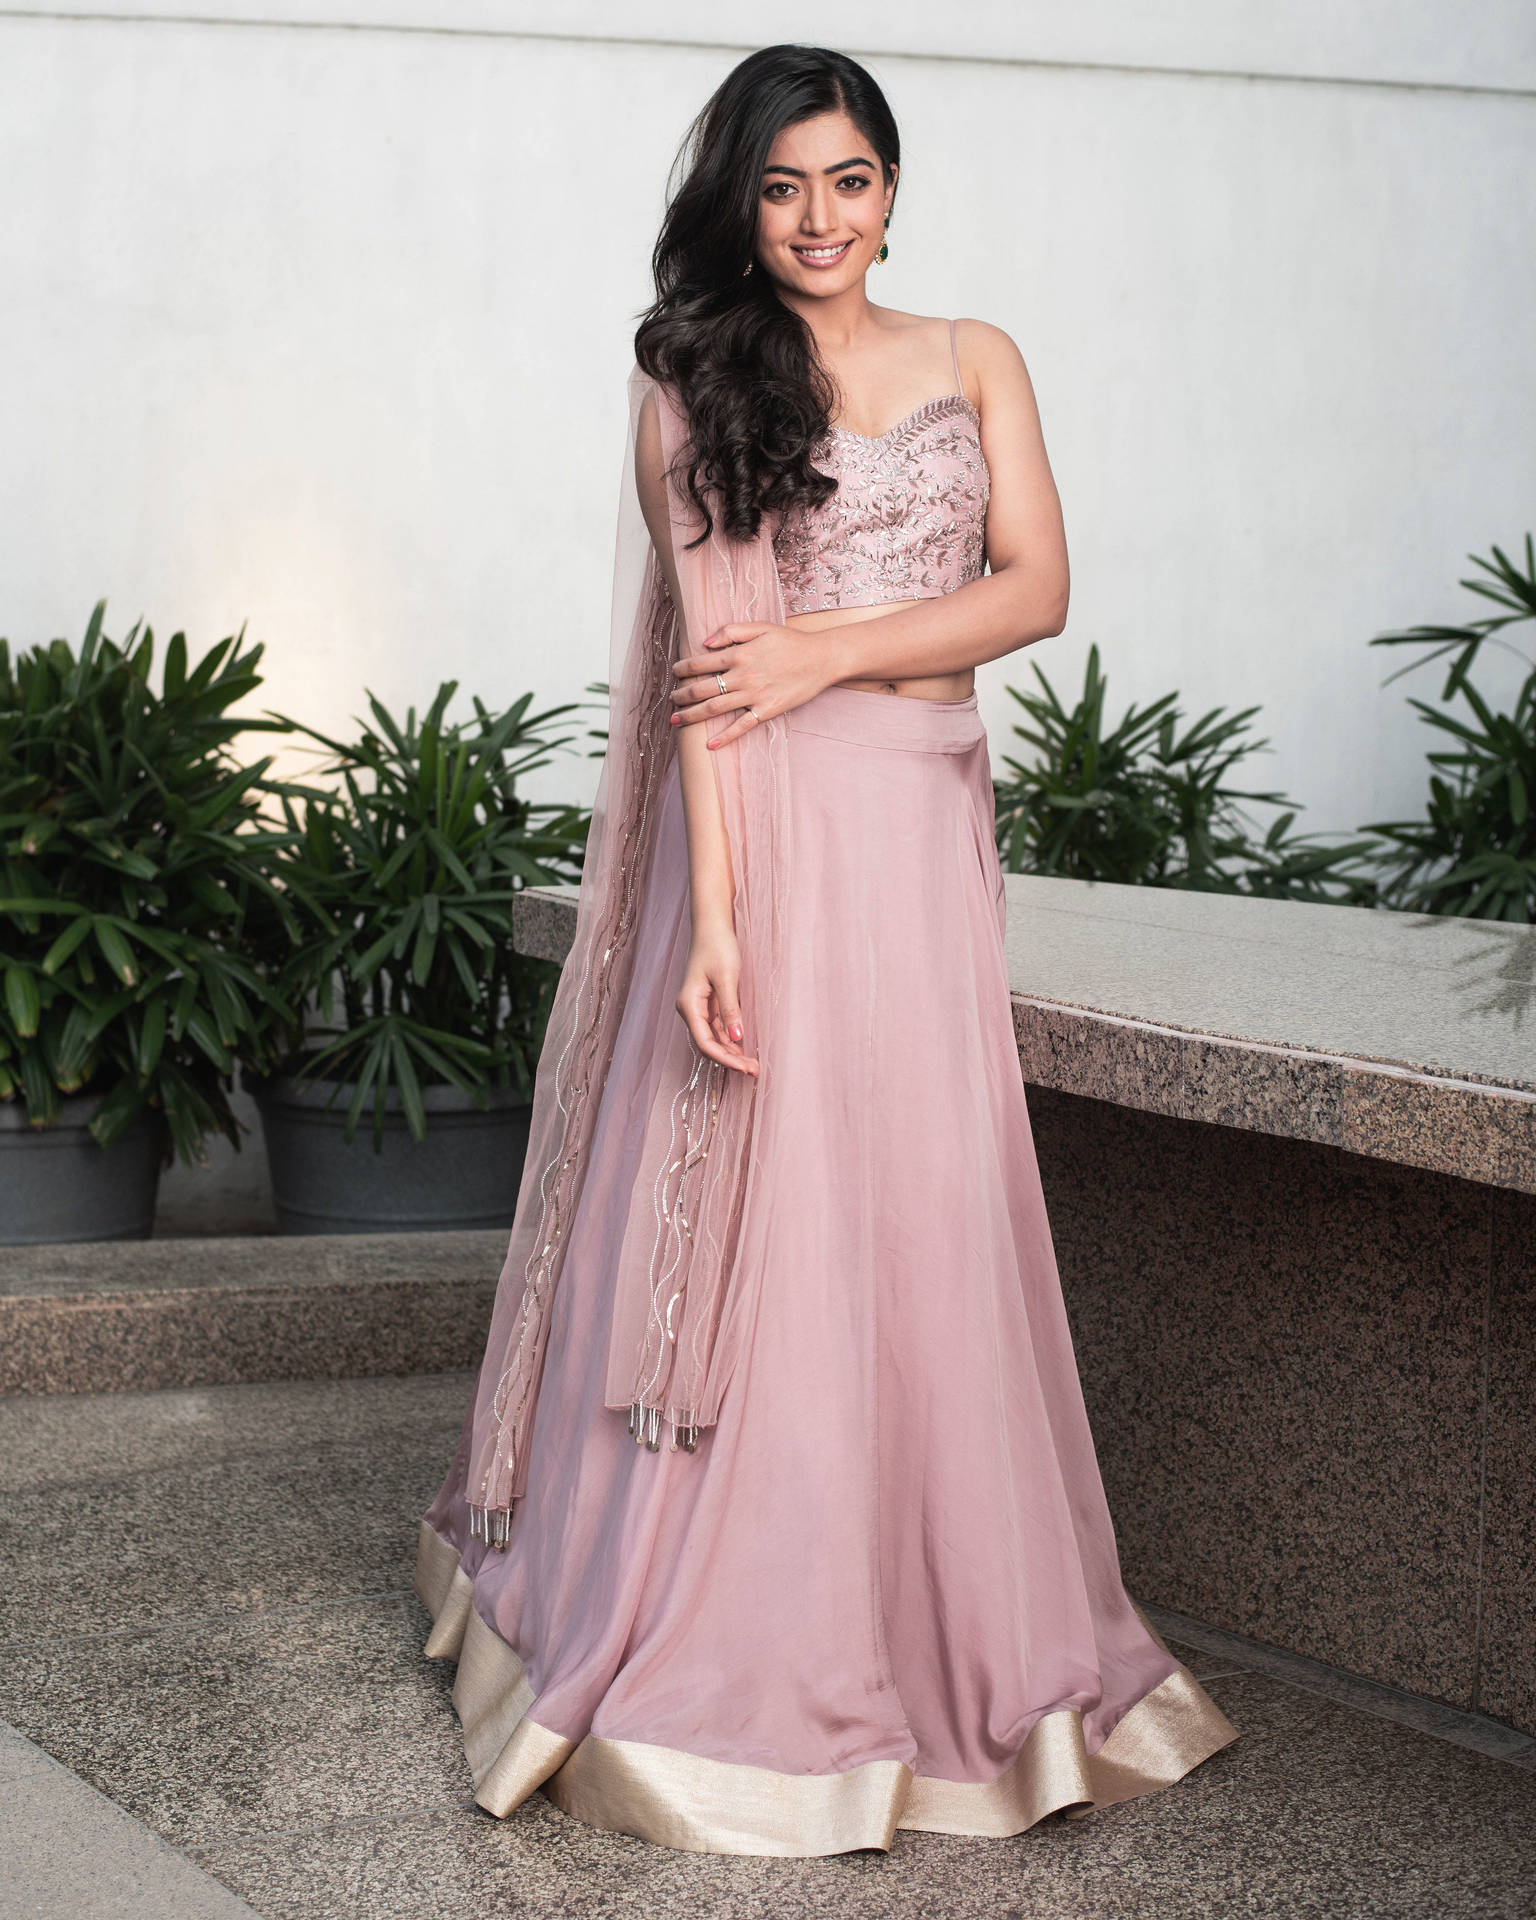 Rashmika Mandanna Hd Pink Dress Wallpaper